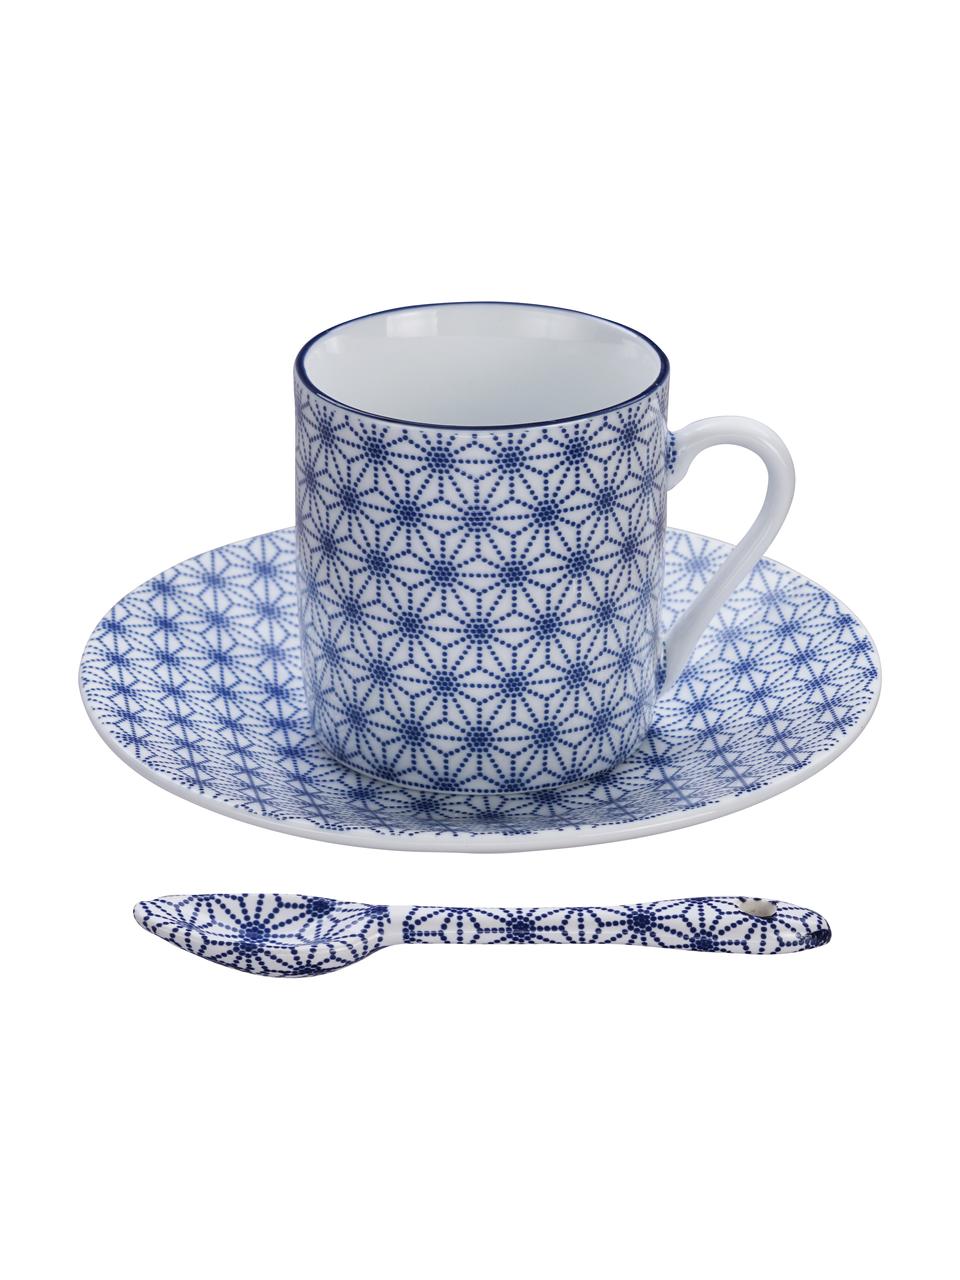 Handgemachte Porzellan-Espressotassen Nippon mit Untertassen und Löffeln in Blau/Weiß, 4-er Set, Porzellan, Blau, Weiß, Set mit verschiedenen Größen